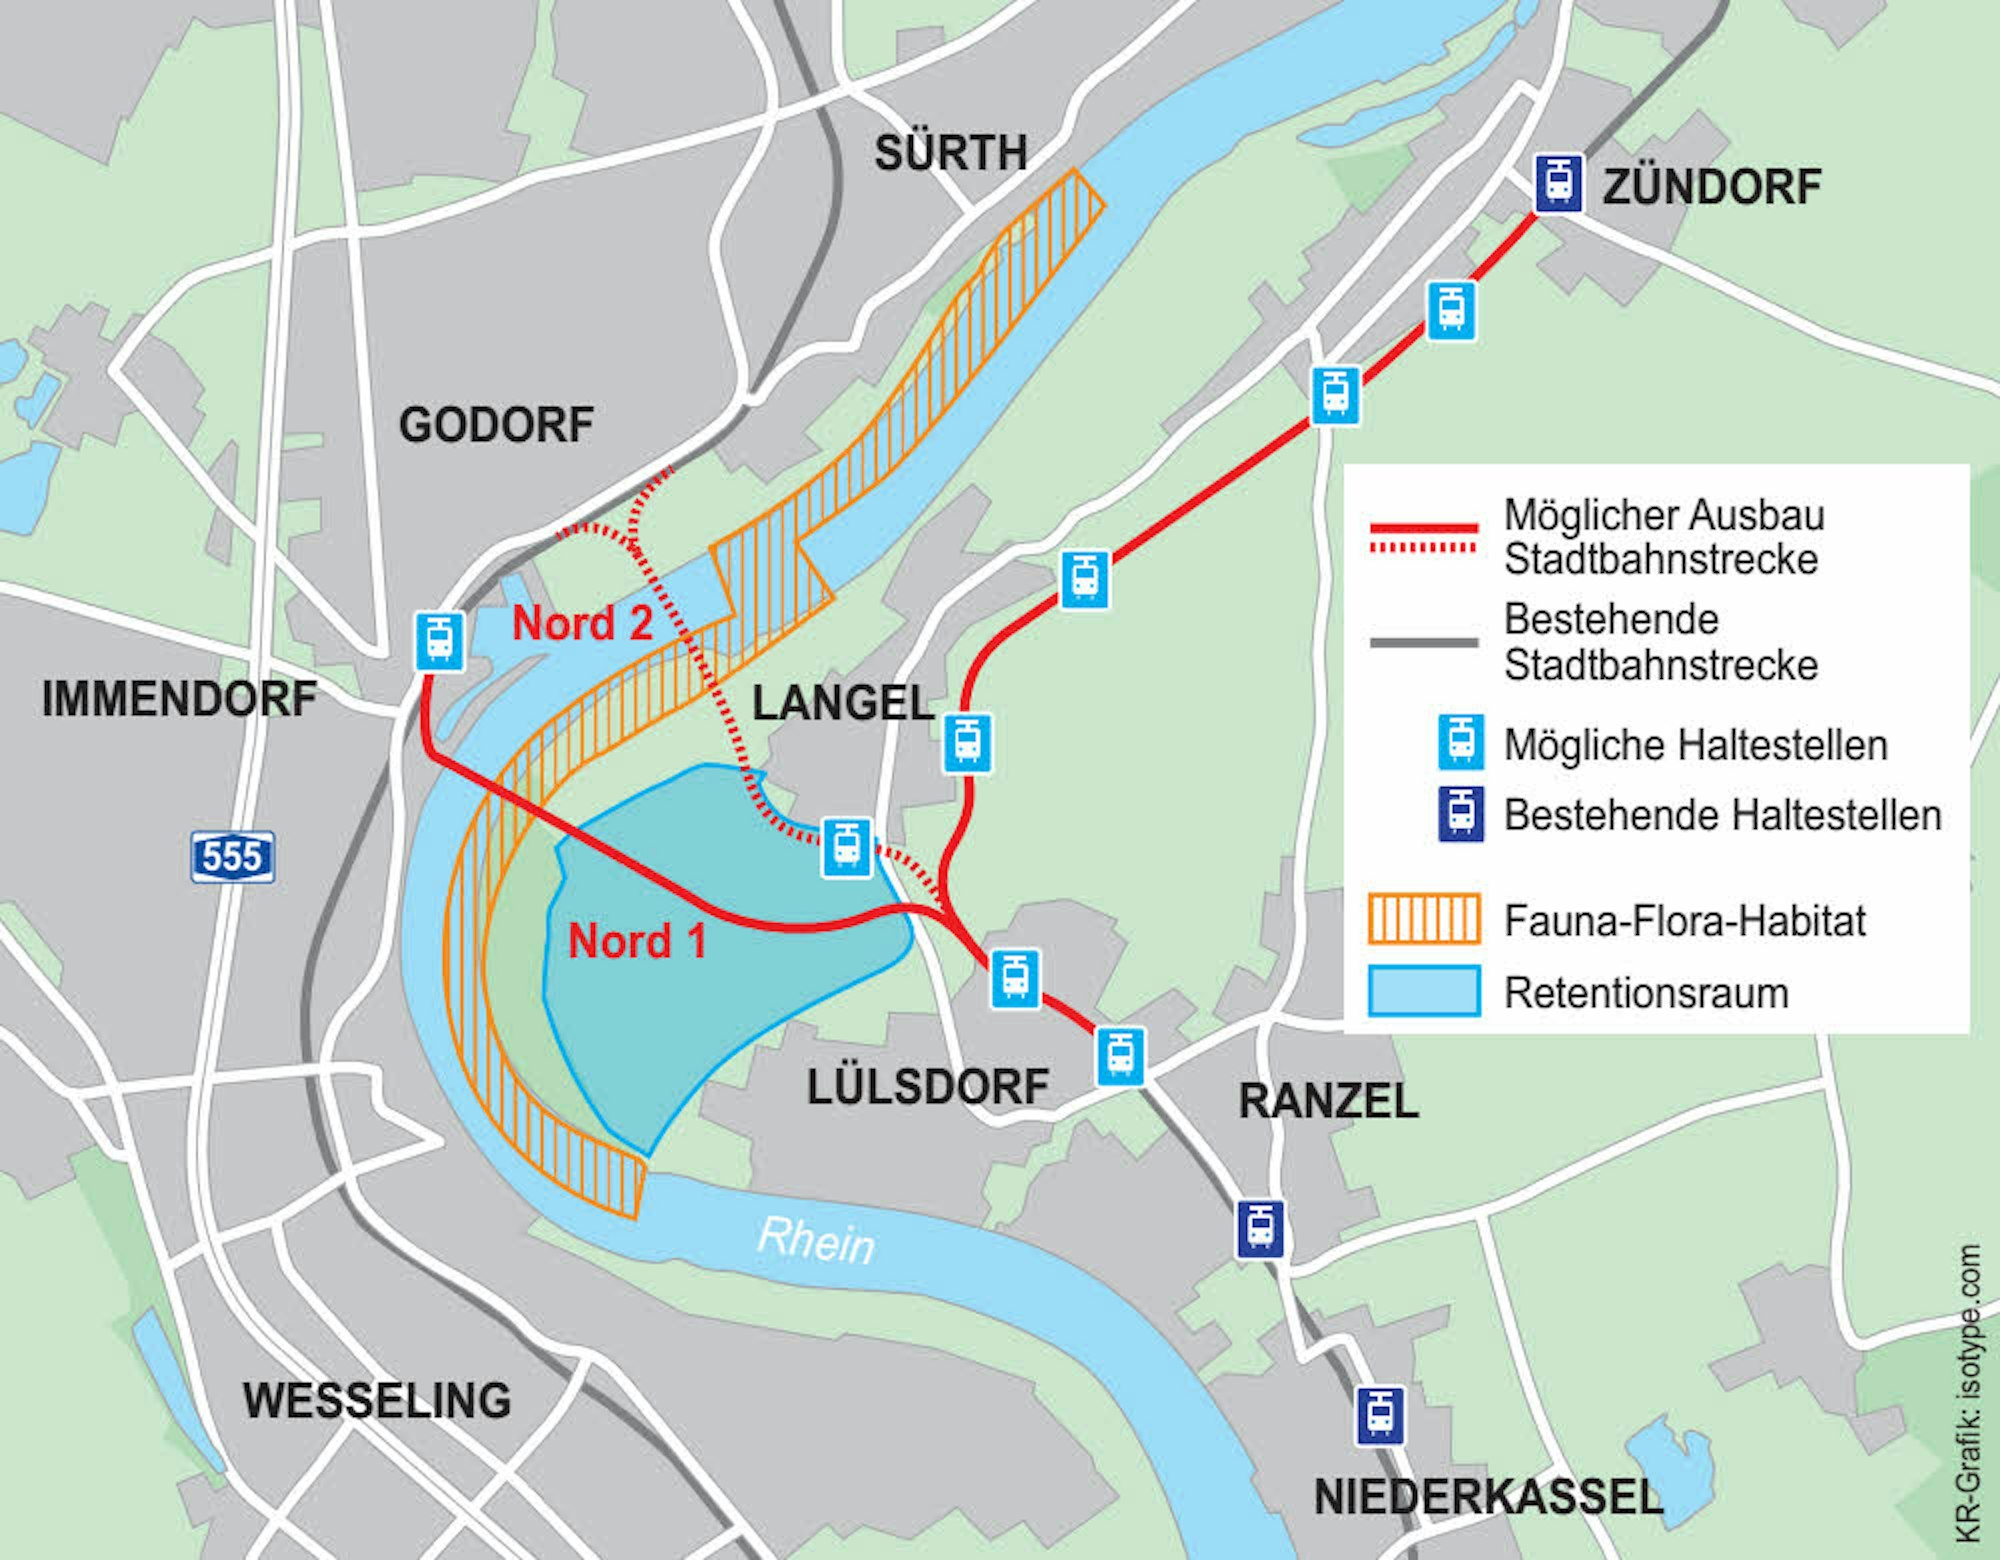 Die Verlängerung der Linie 7 steht seit Jahren in Rede. Zusätzlich beleben nun aber auch Überlegungen über eine Rheinquerung in zwei Varianten (Nord 1 und 2) die Diskussion.